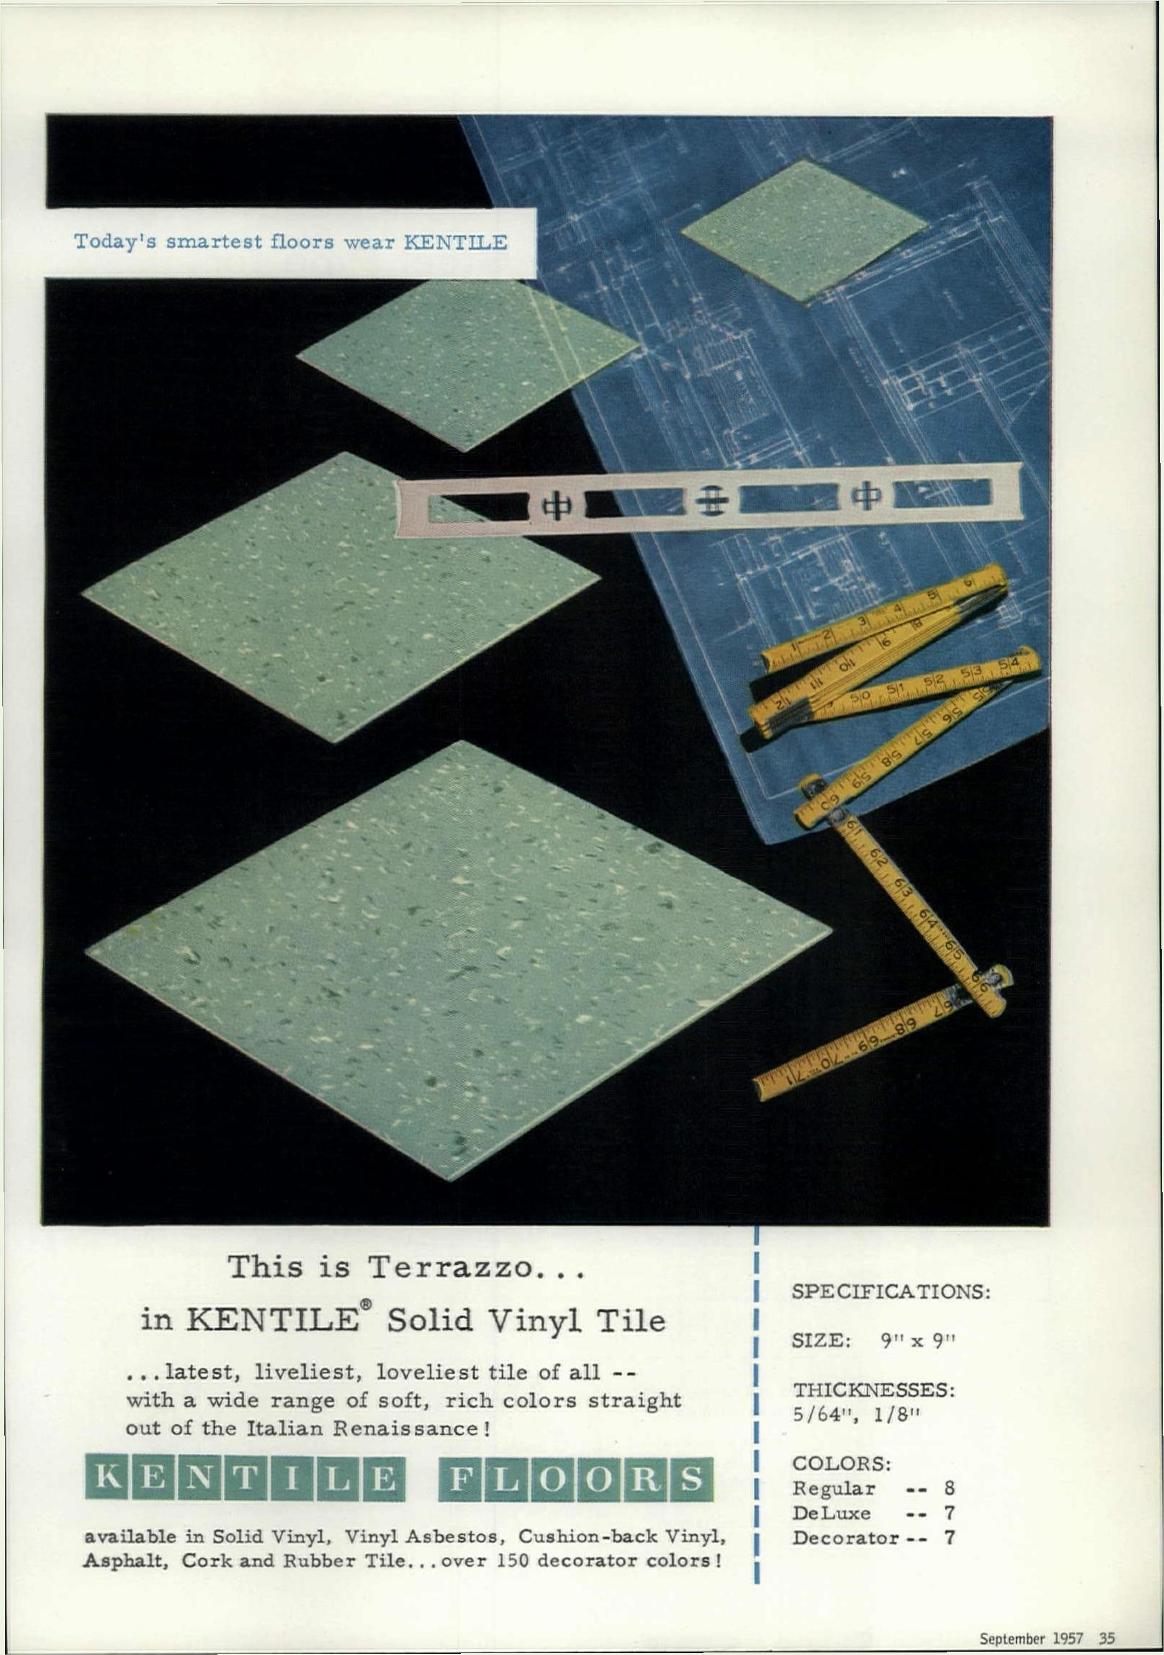 Pubblicità Kentile Floors su Progressive Architecture